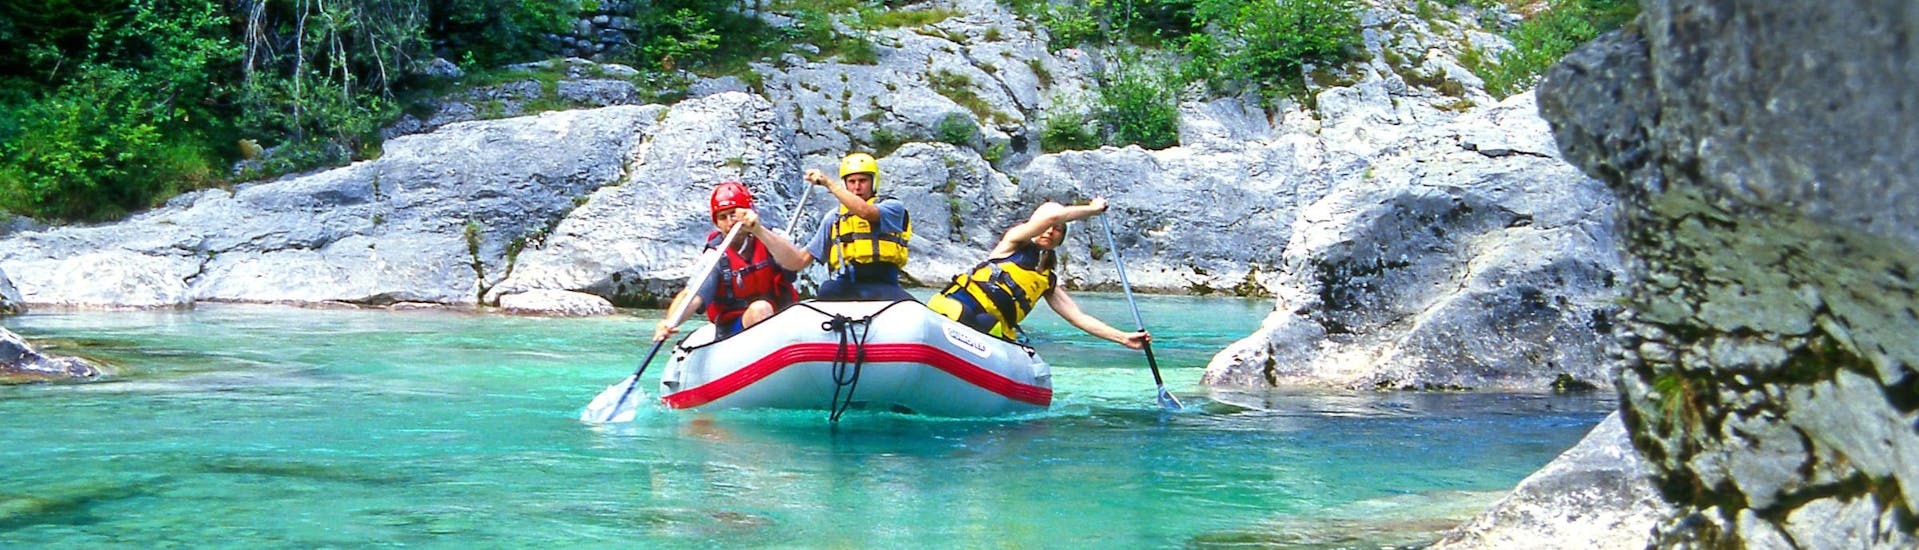 Un groupe de jeunes gens s'amuse lors d'une activité en eau vive dans la destination de rafting et canyoning Soča. 